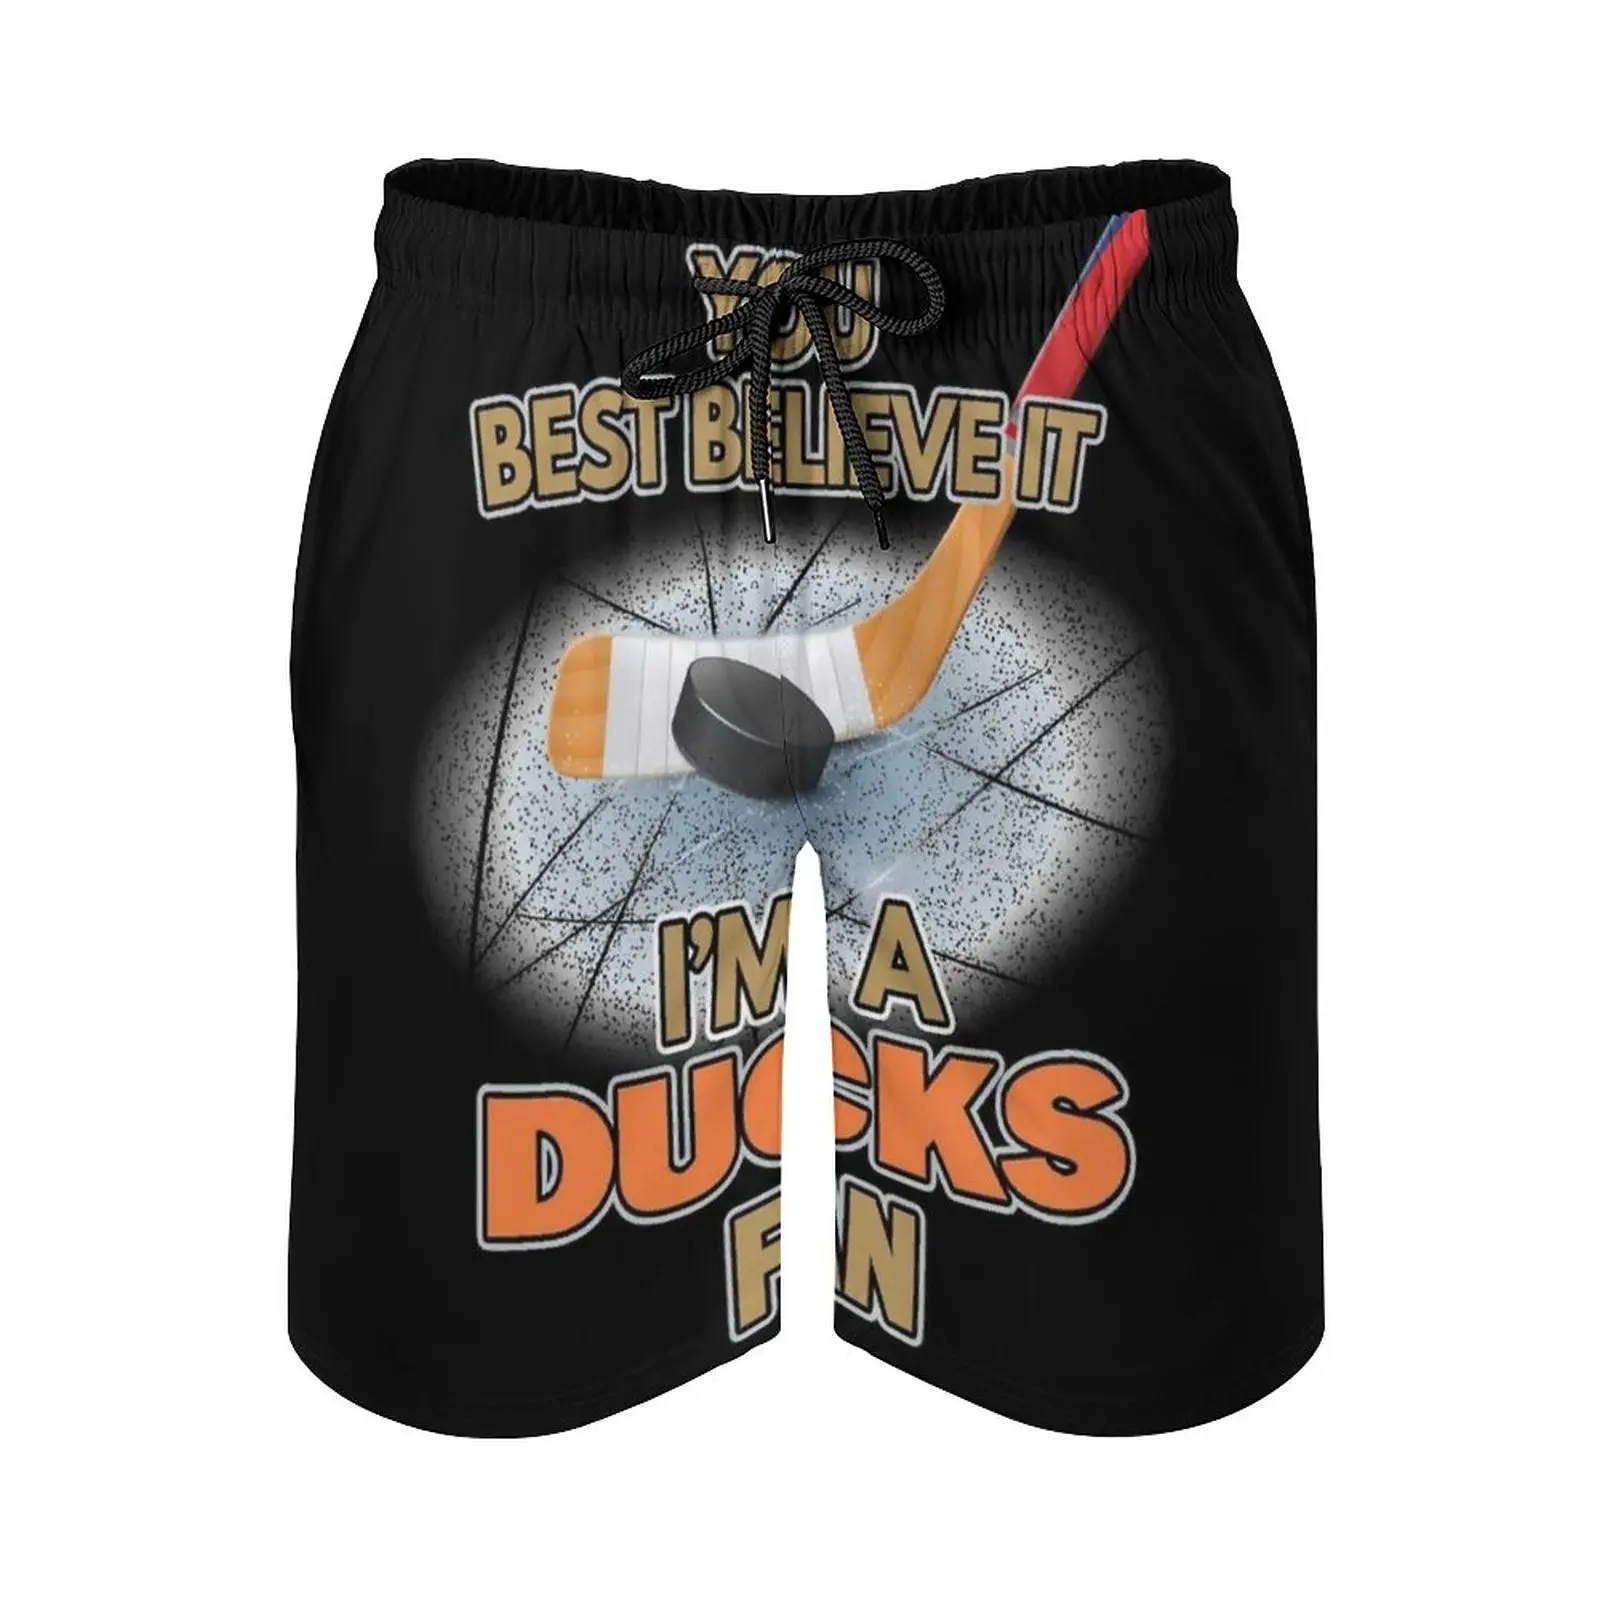 

Fan Print Swim Beach Board Shorts Swimsuit Loose Men'S Trunks Breathable Hockey Fan Believe It Hockey Player Ice Hockey Designs